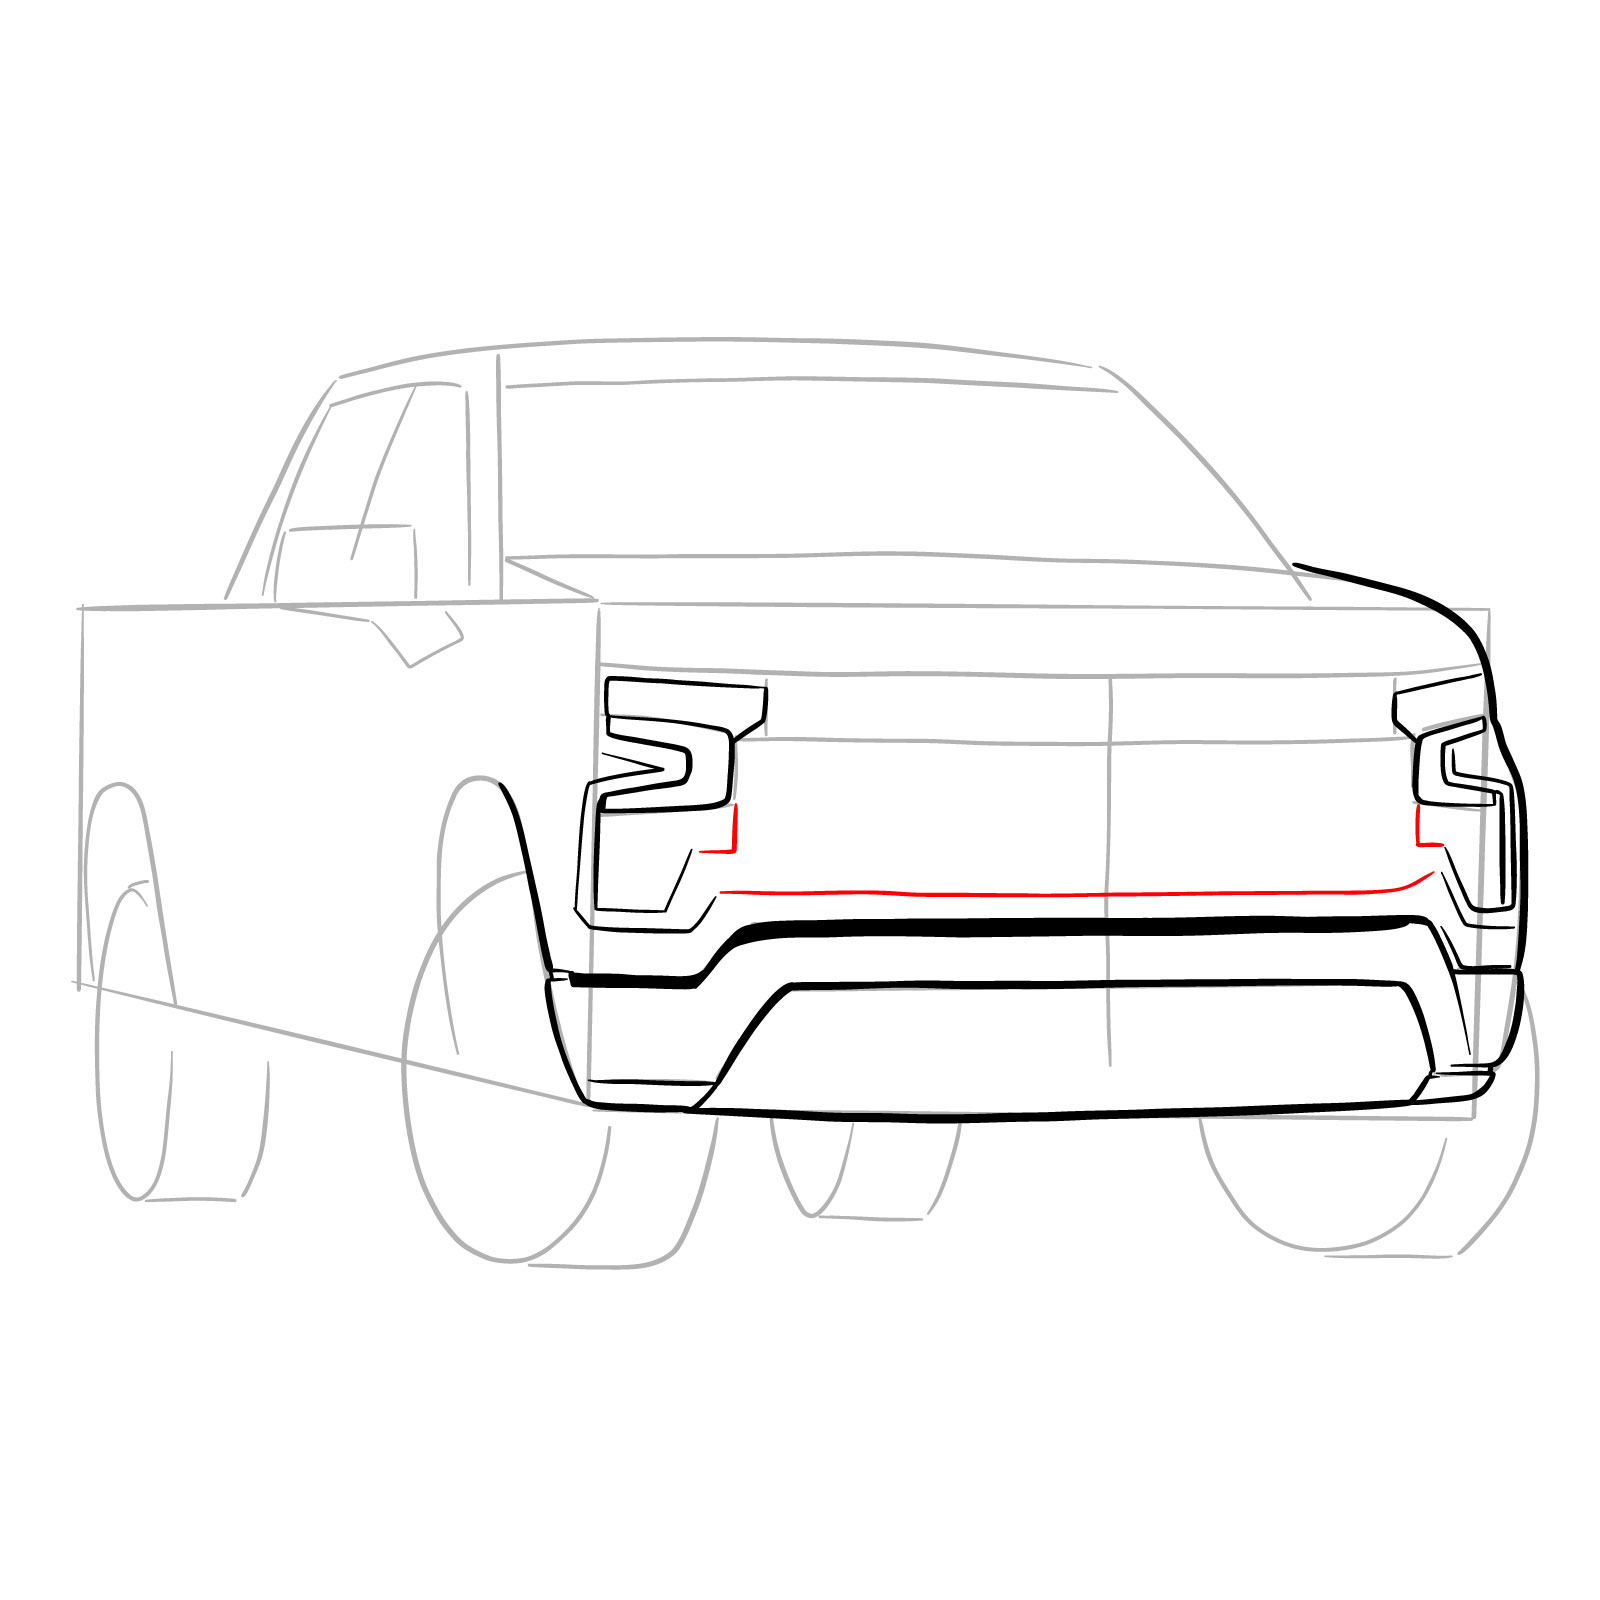 How to draw a 2022 Chevy Silverado - step 11